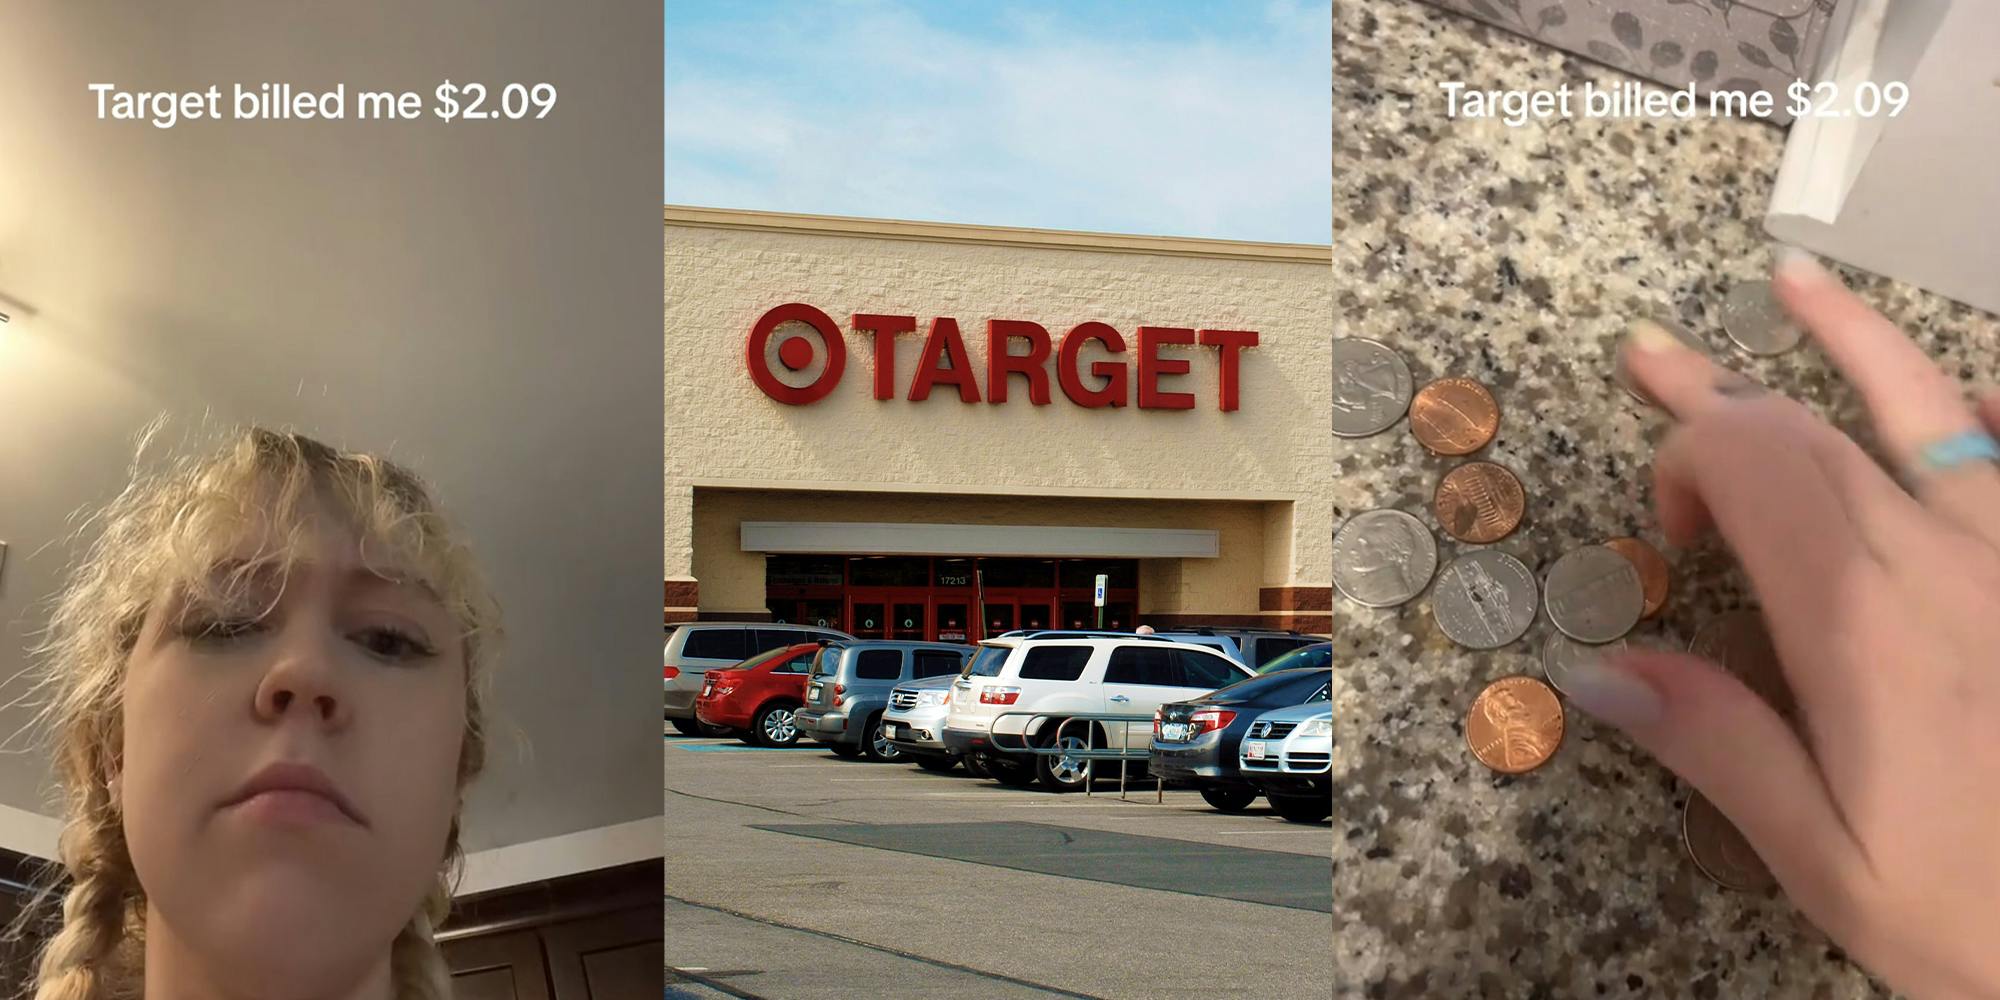 TikToker gets revenge after Target billed her $2.09